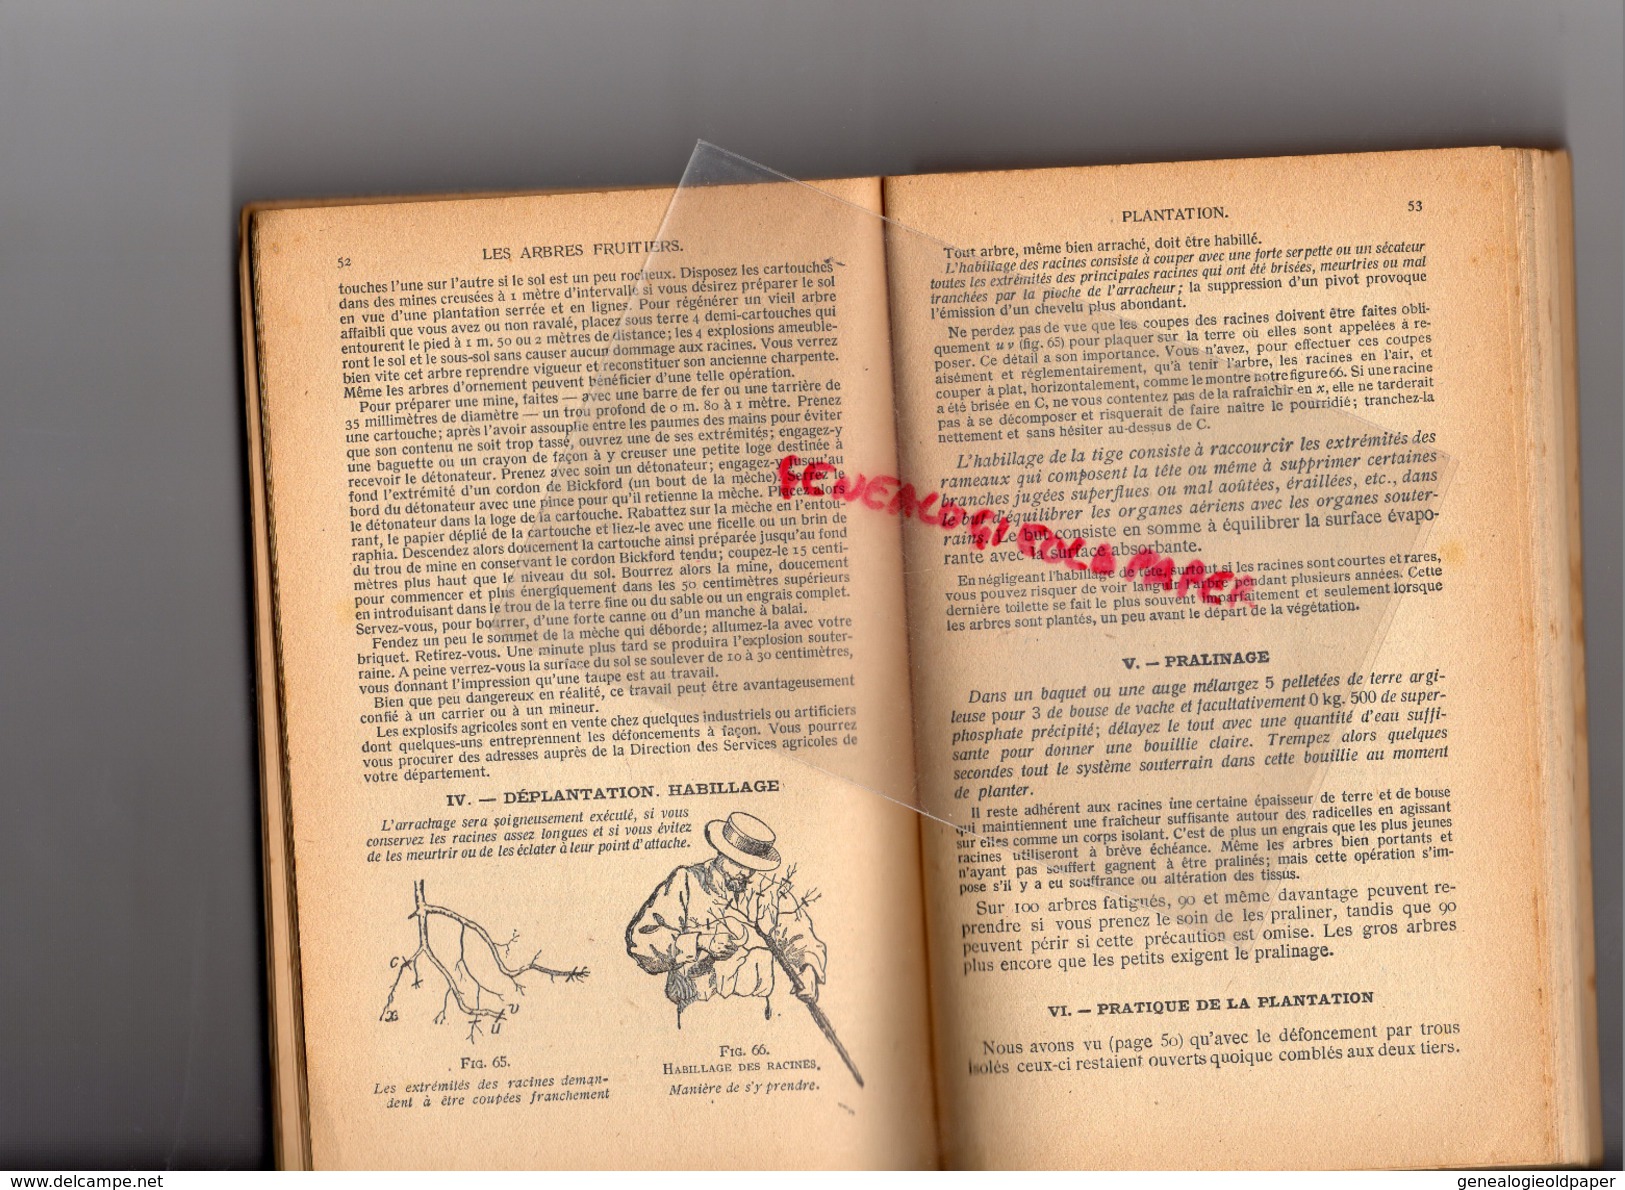 ENCYCLOPEDIE CONNAISSANCES AGRICOLES-ARBORICULTURE FRUITIRE-J. VERCIER-HACHETTE-1910- HORTICULTURE-AGRICULTURE-FLORE - Encyclopédies